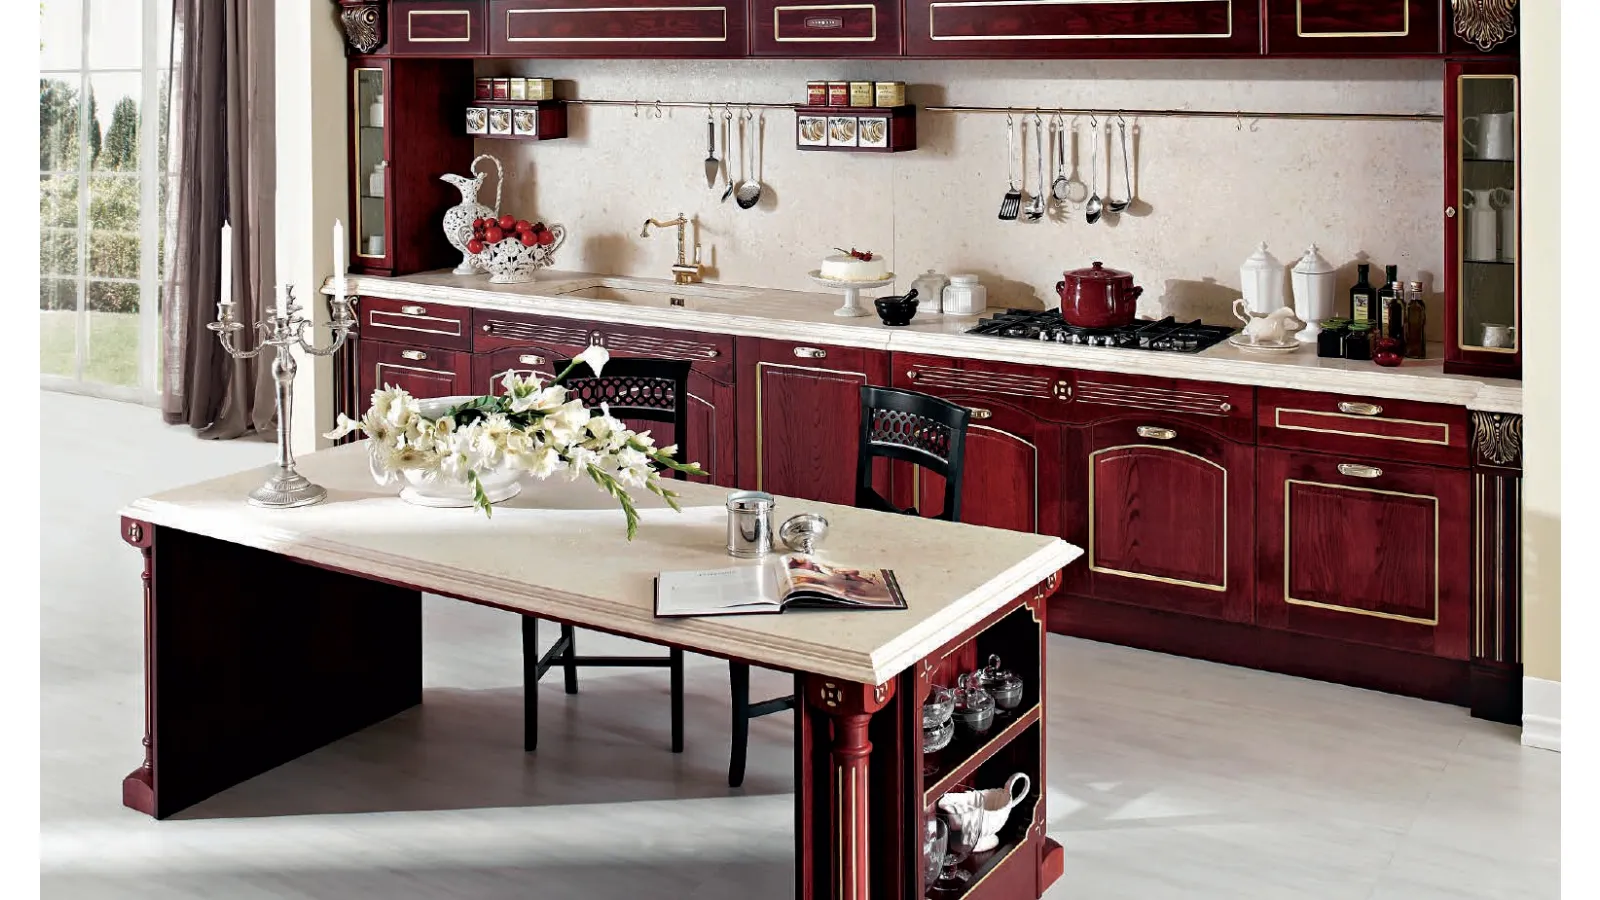 Cucina Classica lineare Imperial Luxury in Frassino tinto in trasparenza Rosso Borgogna di Aran